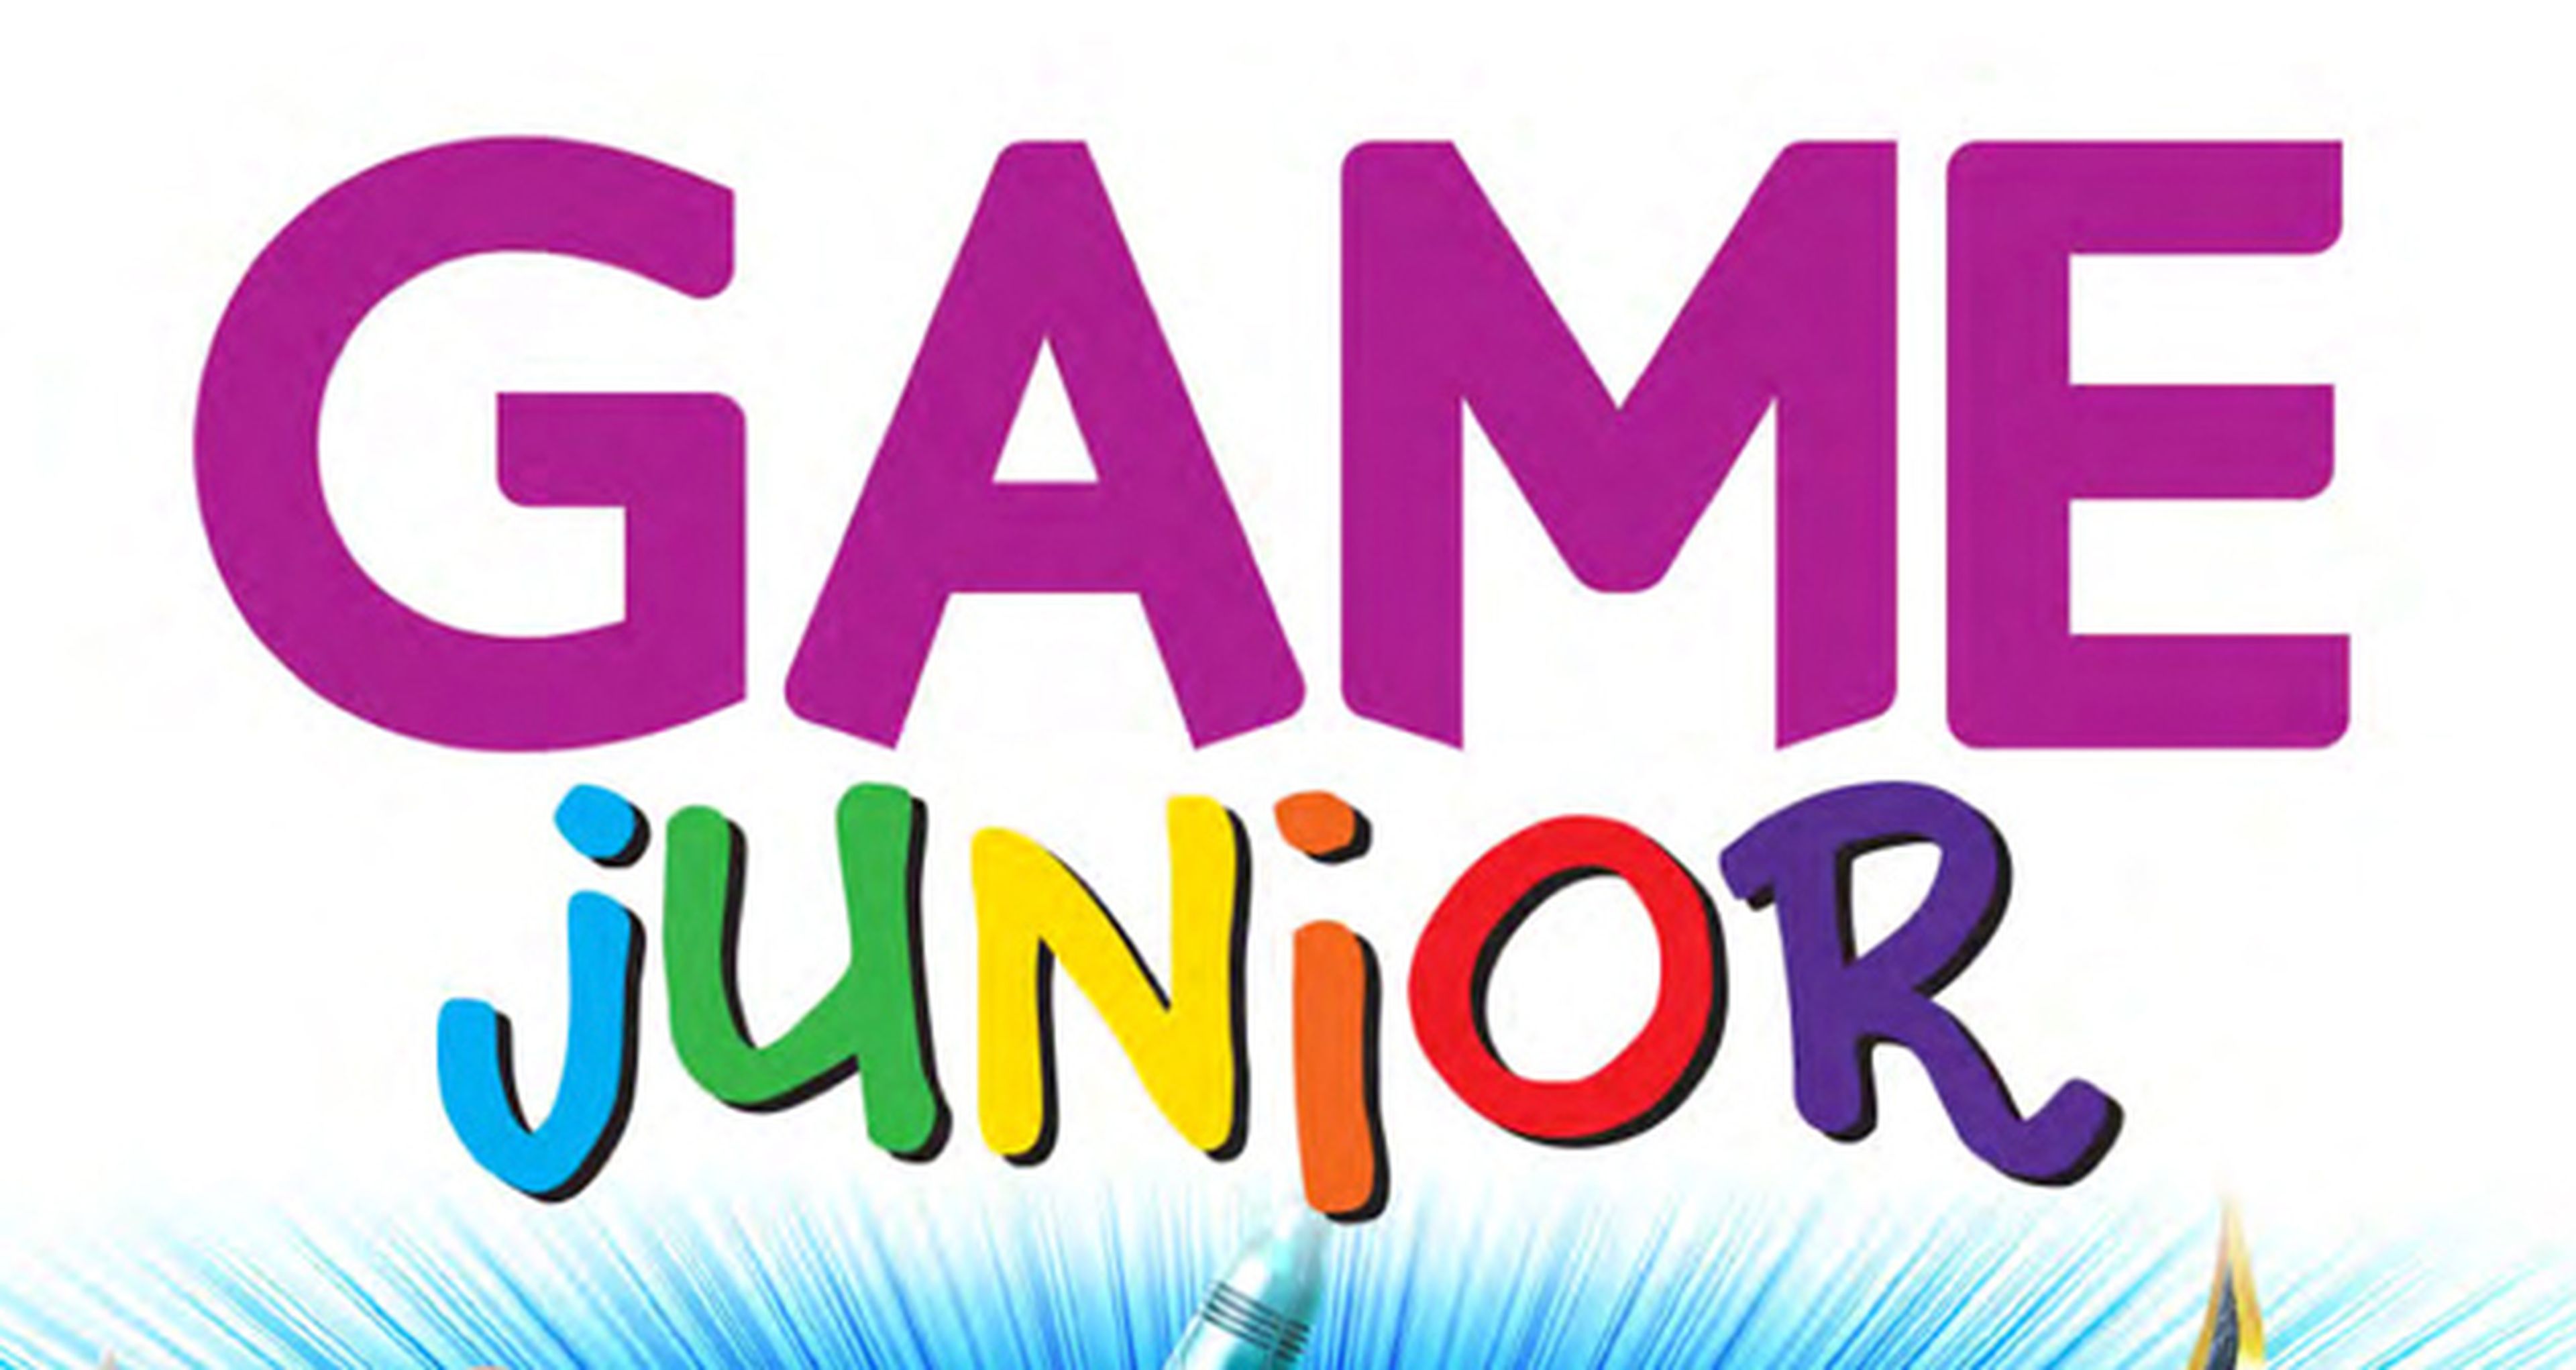 Game Junior, el nuevo catálogo de GAME para los más jóvenes